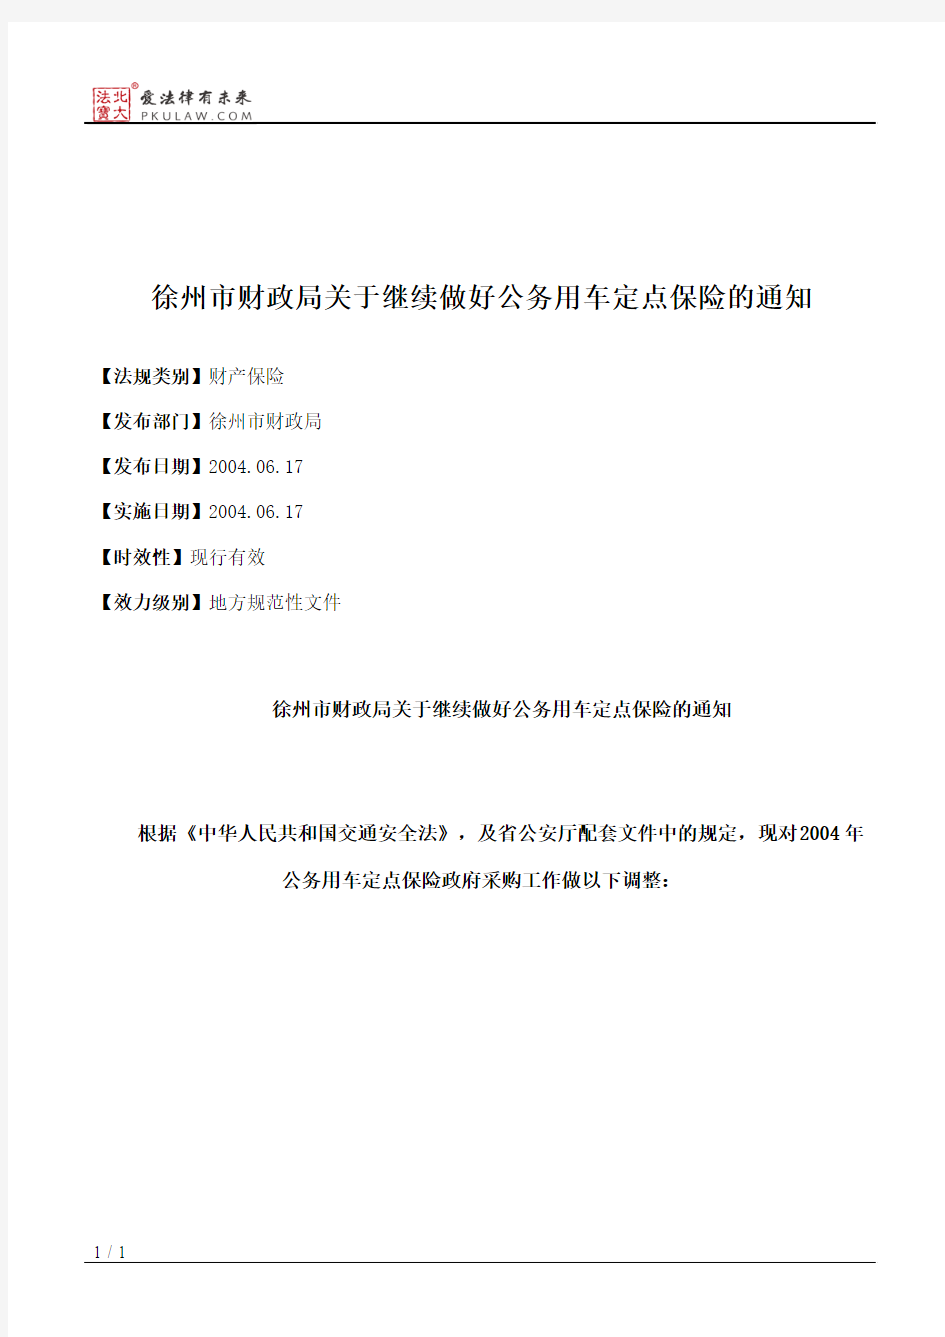 徐州市财政局关于继续做好公务用车定点保险的通知